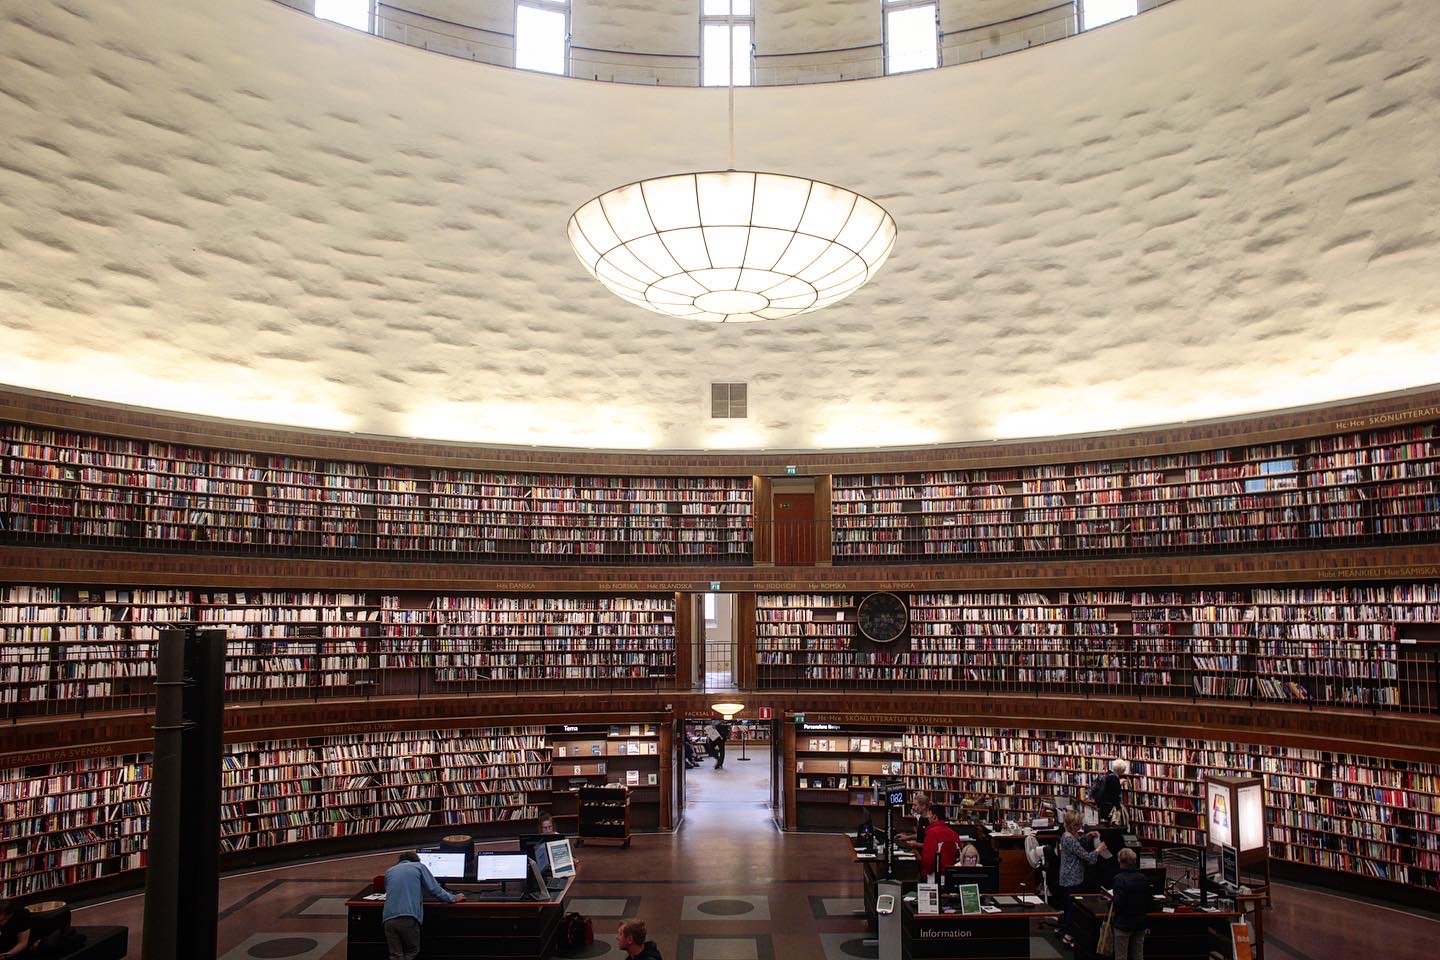 グンナール・アスプルンドが手掛けた美しすぎる図書館「ストックホルム市立図書館」